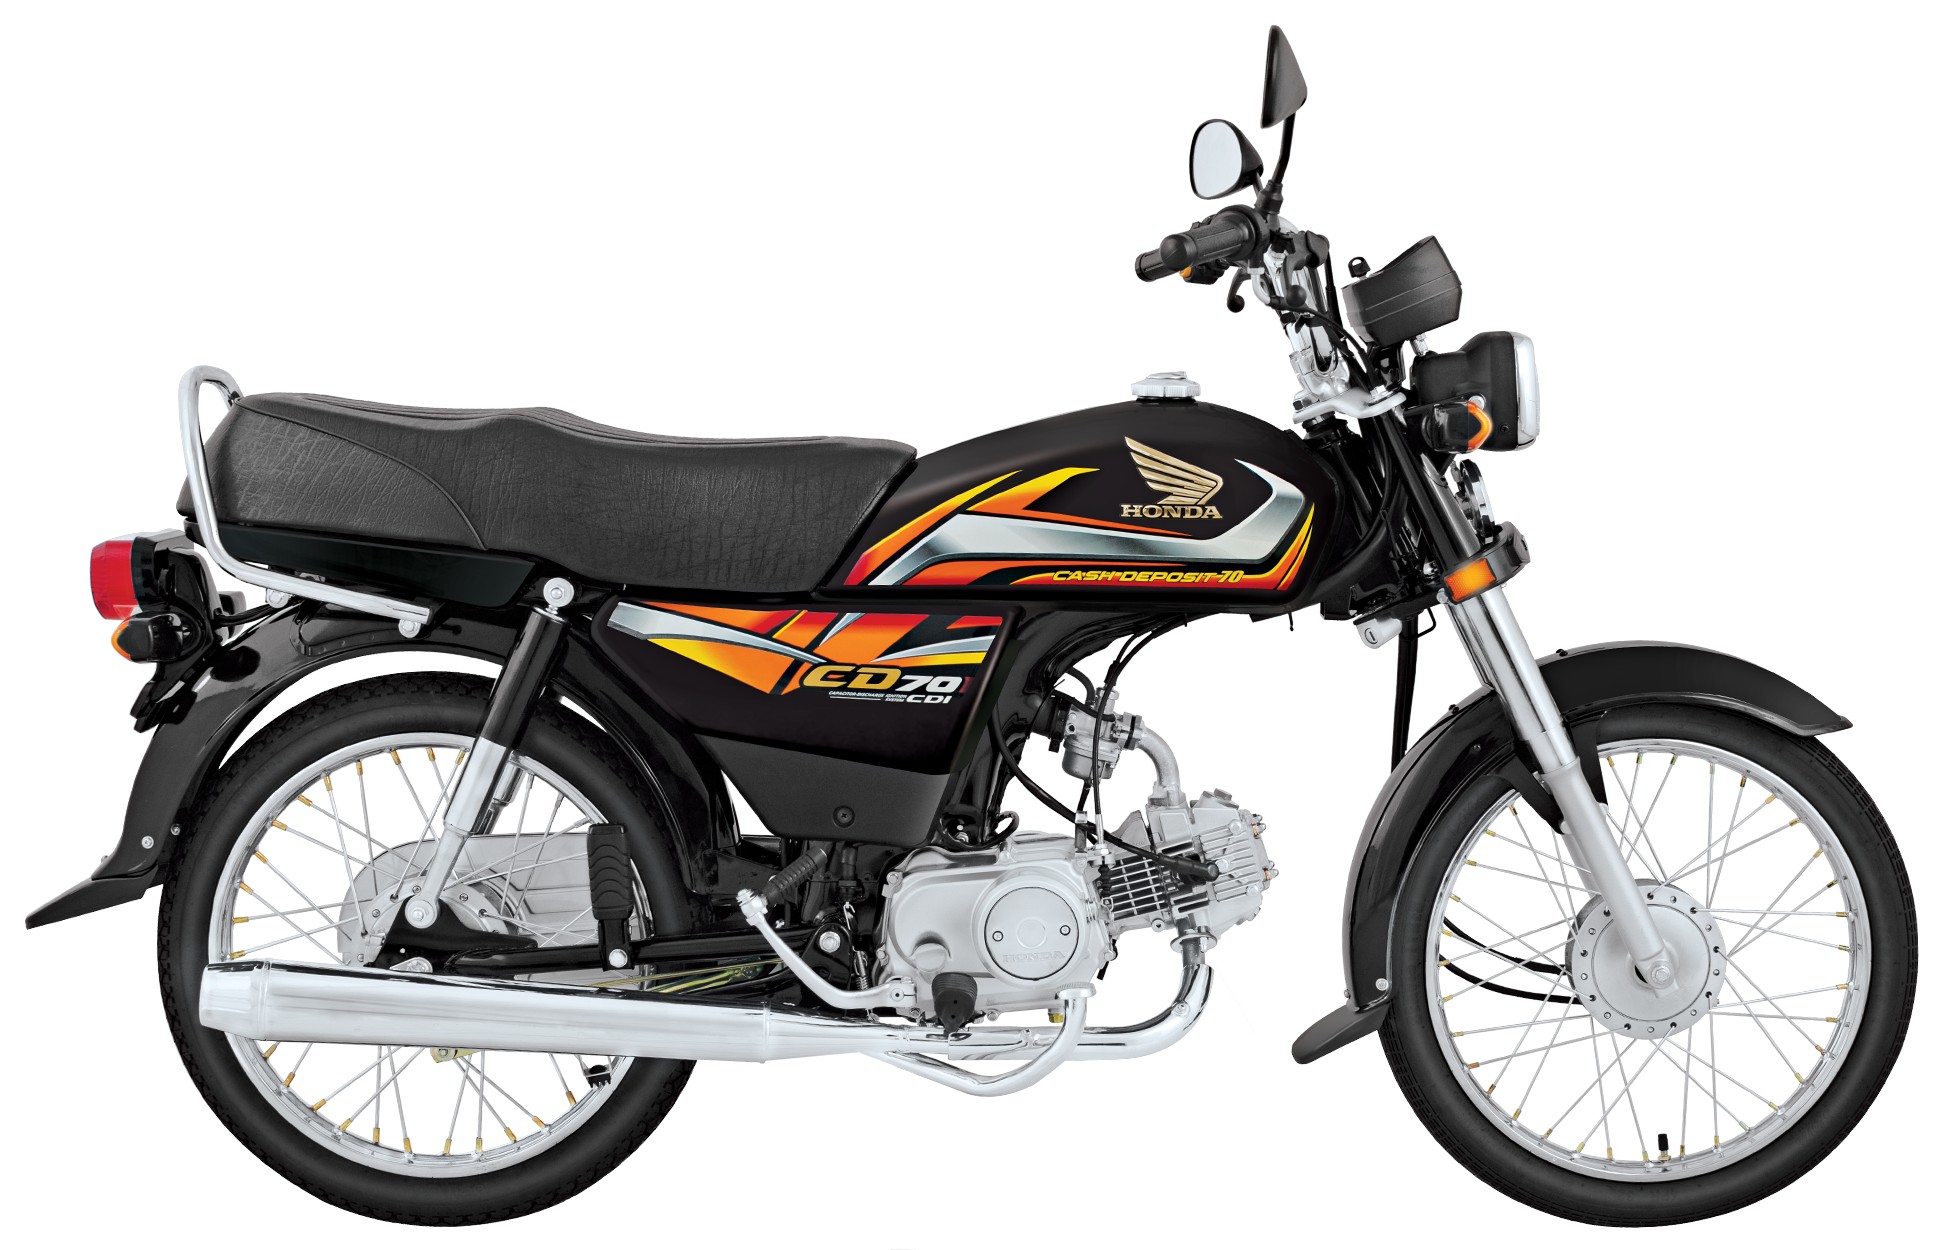 Honda CD 70 Price in Pakistan 2022 New Model